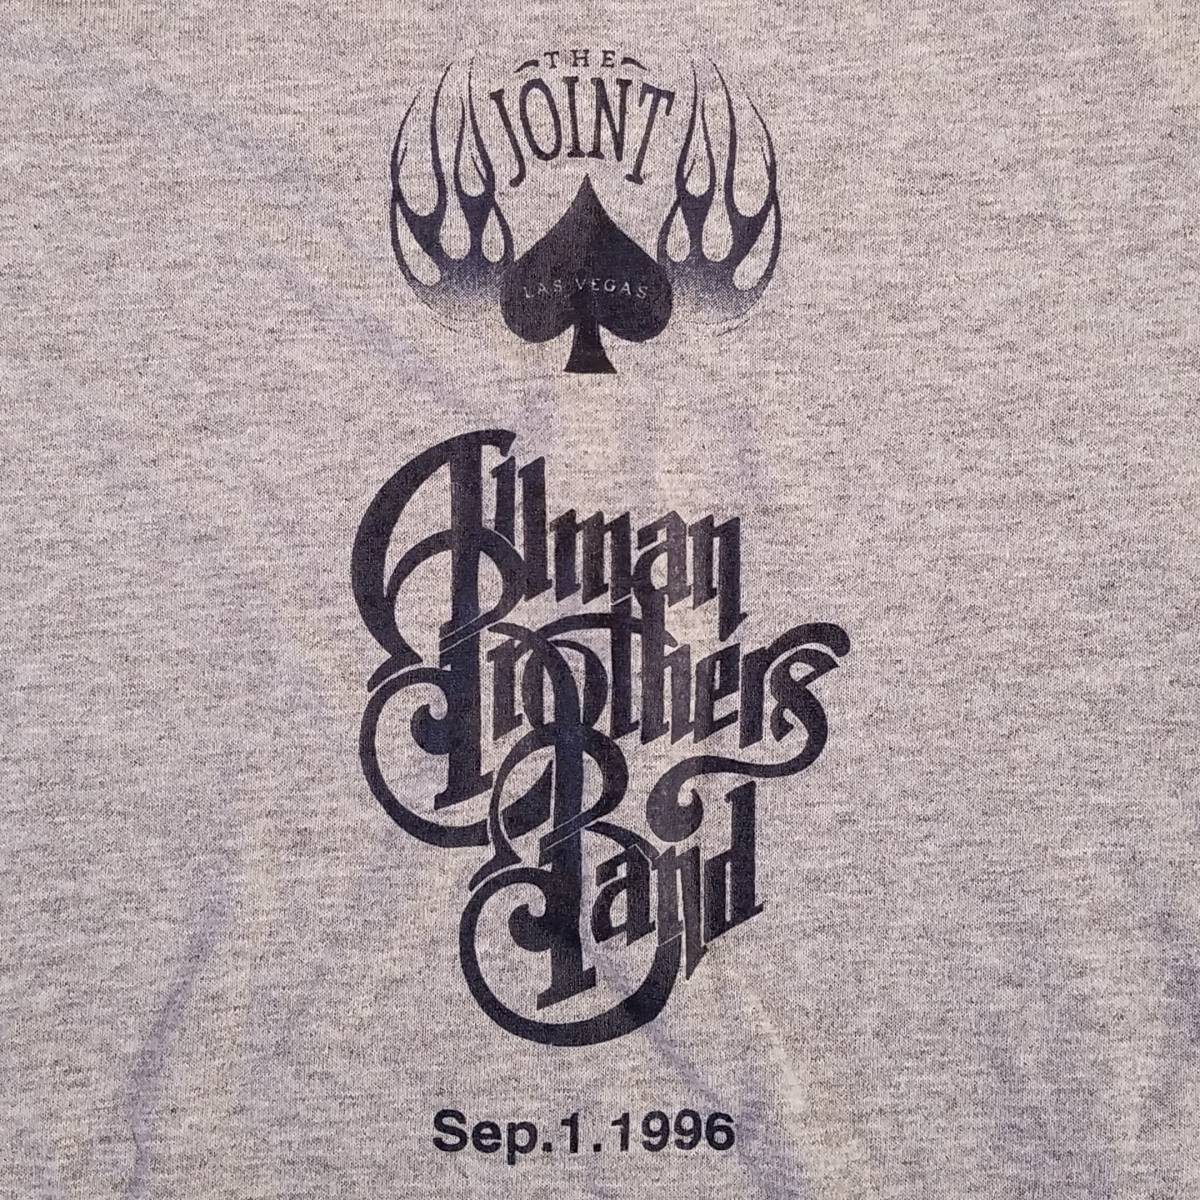 魅惑のバンドT特集! 90s『ALLMAN BROTHERS BAND(オールマン・ブラザーズ・バンド) at THE JOINT on Sep 1,1996』ラグランTシャツ 米国製 M_背面プリント